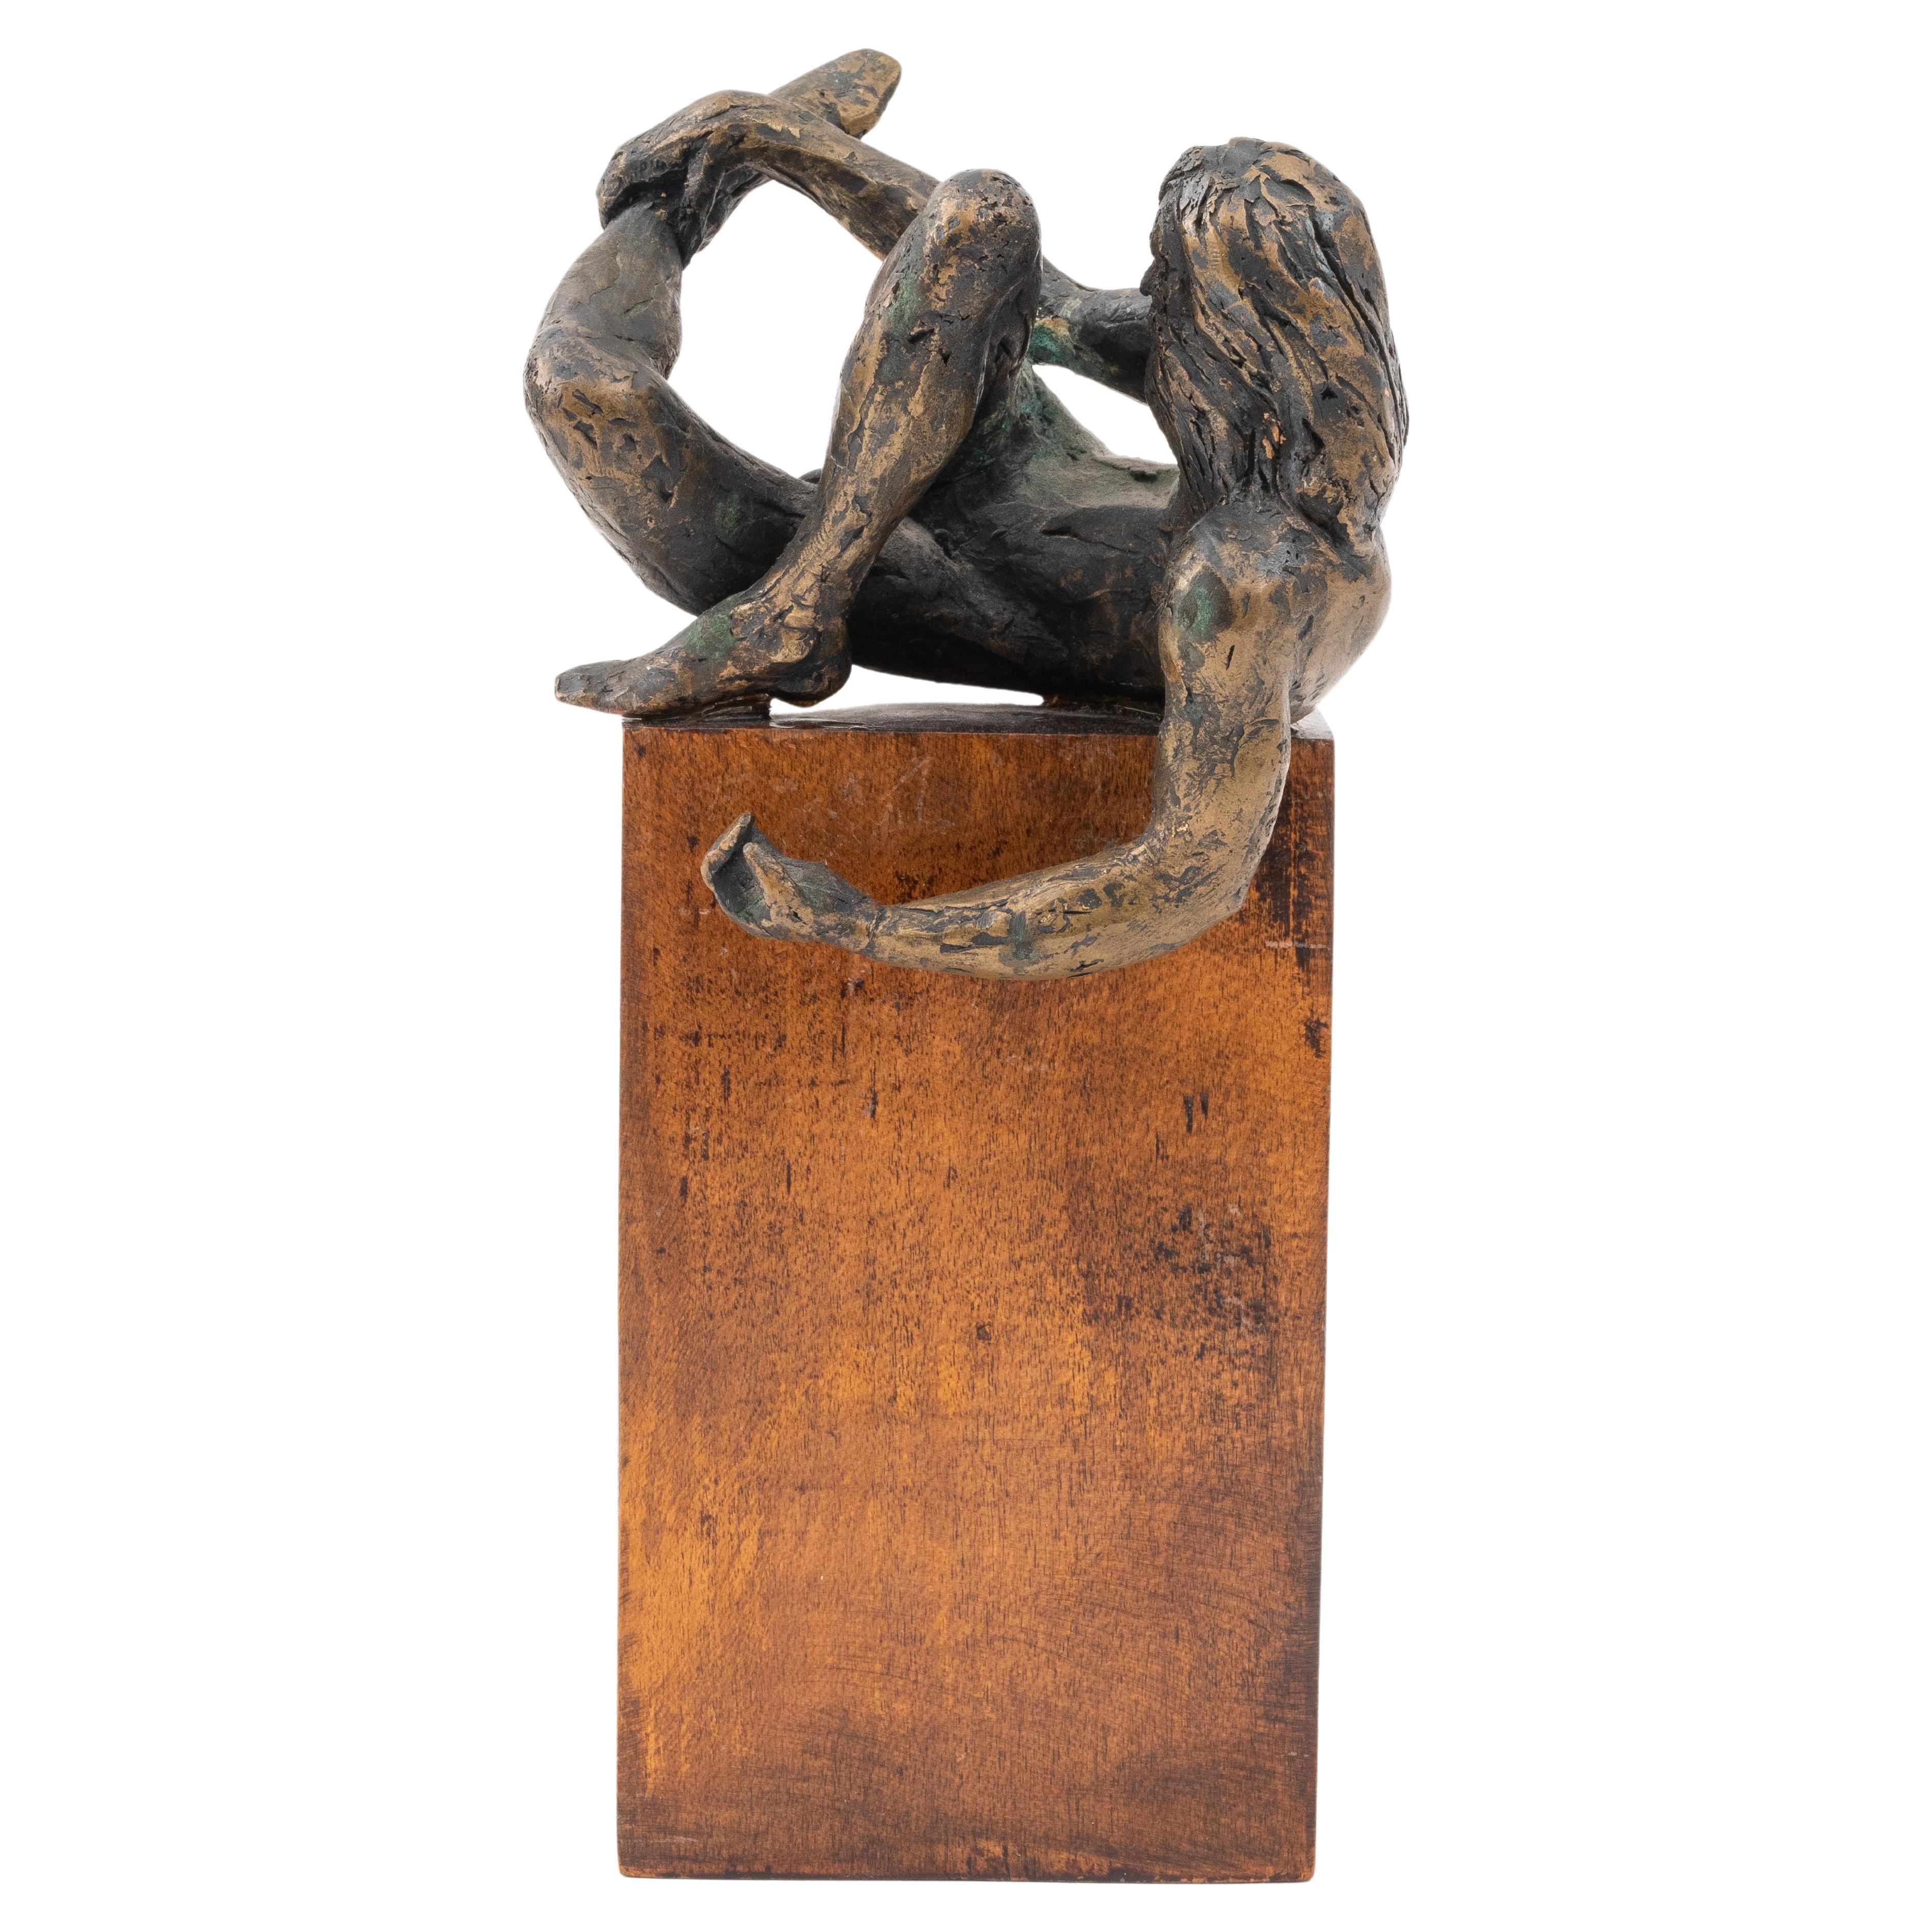 Der männliche Akt, Bronzeskulptur, unsigniert, auf Holzsockel befestigt